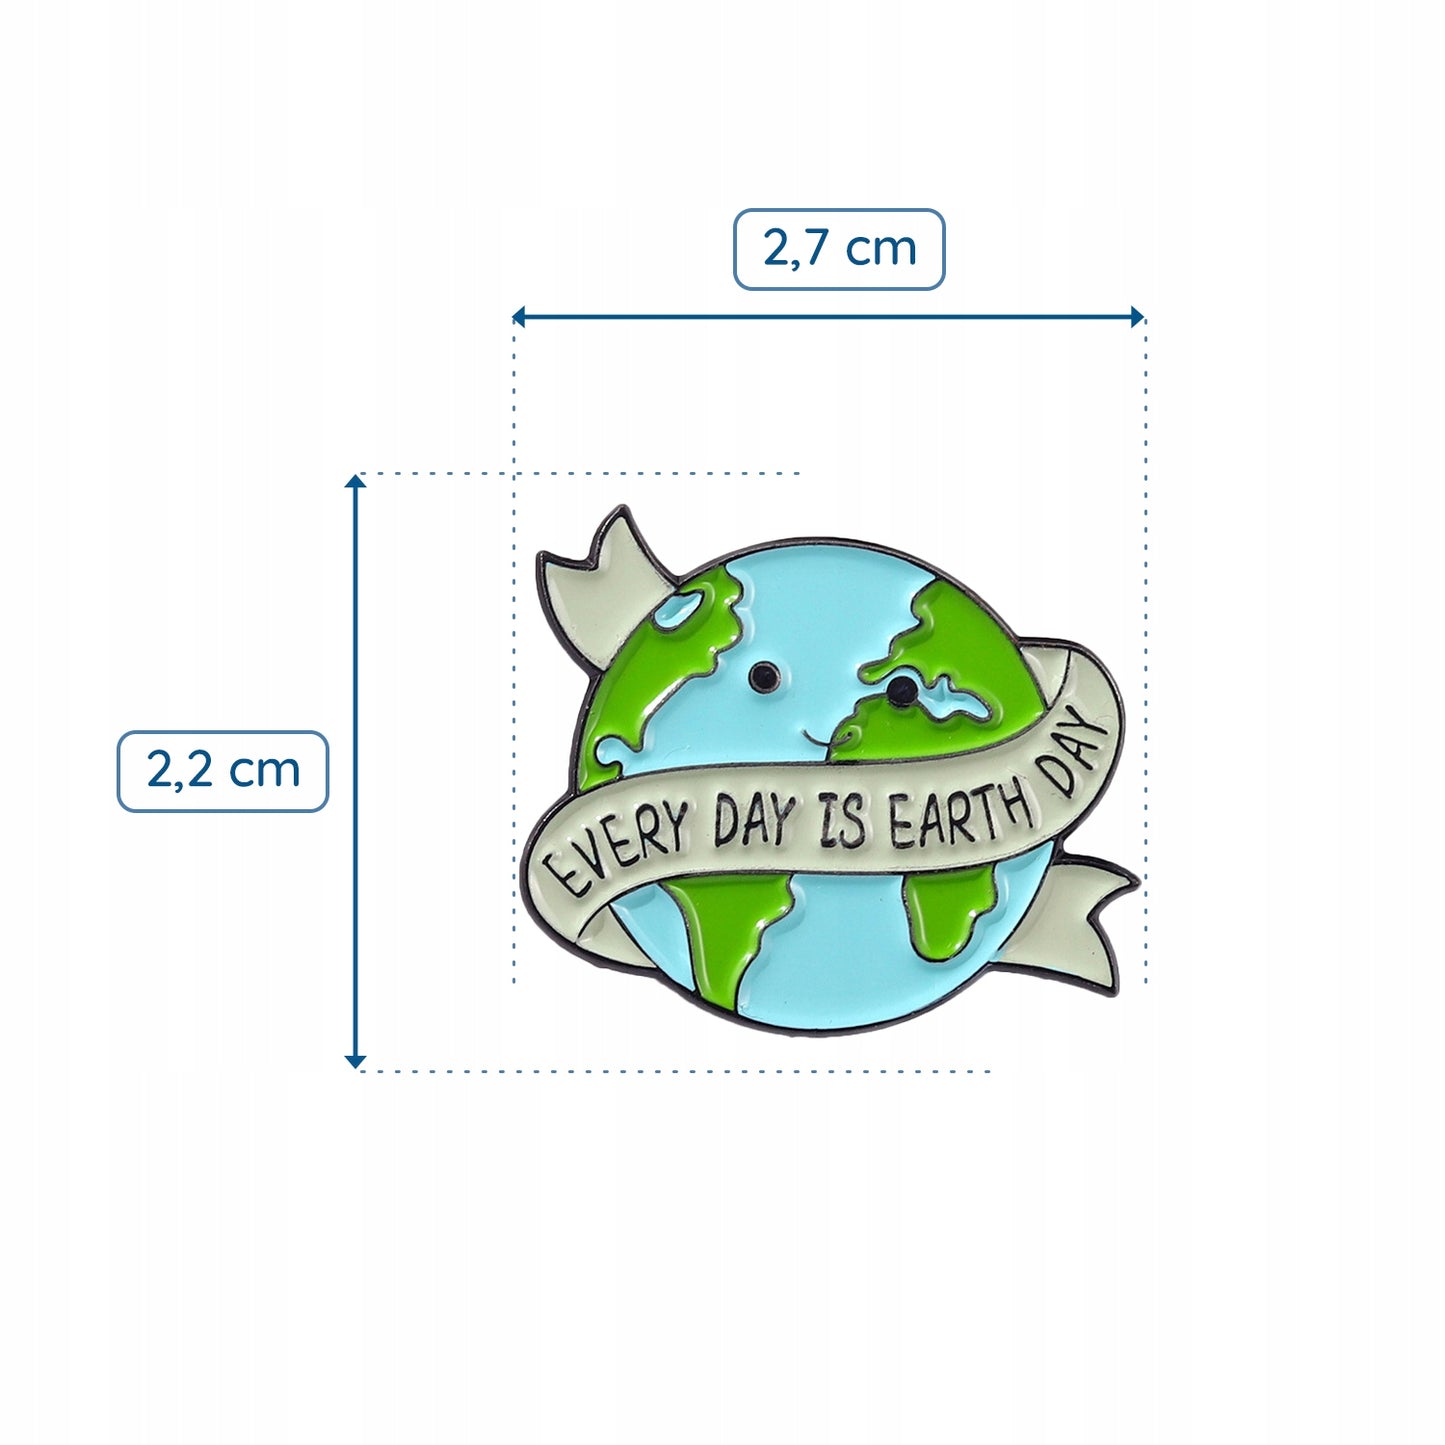 Ekologiczna przypinka w kształcie planety Ziemia ze sloganem "Every Day Is Earth Day"